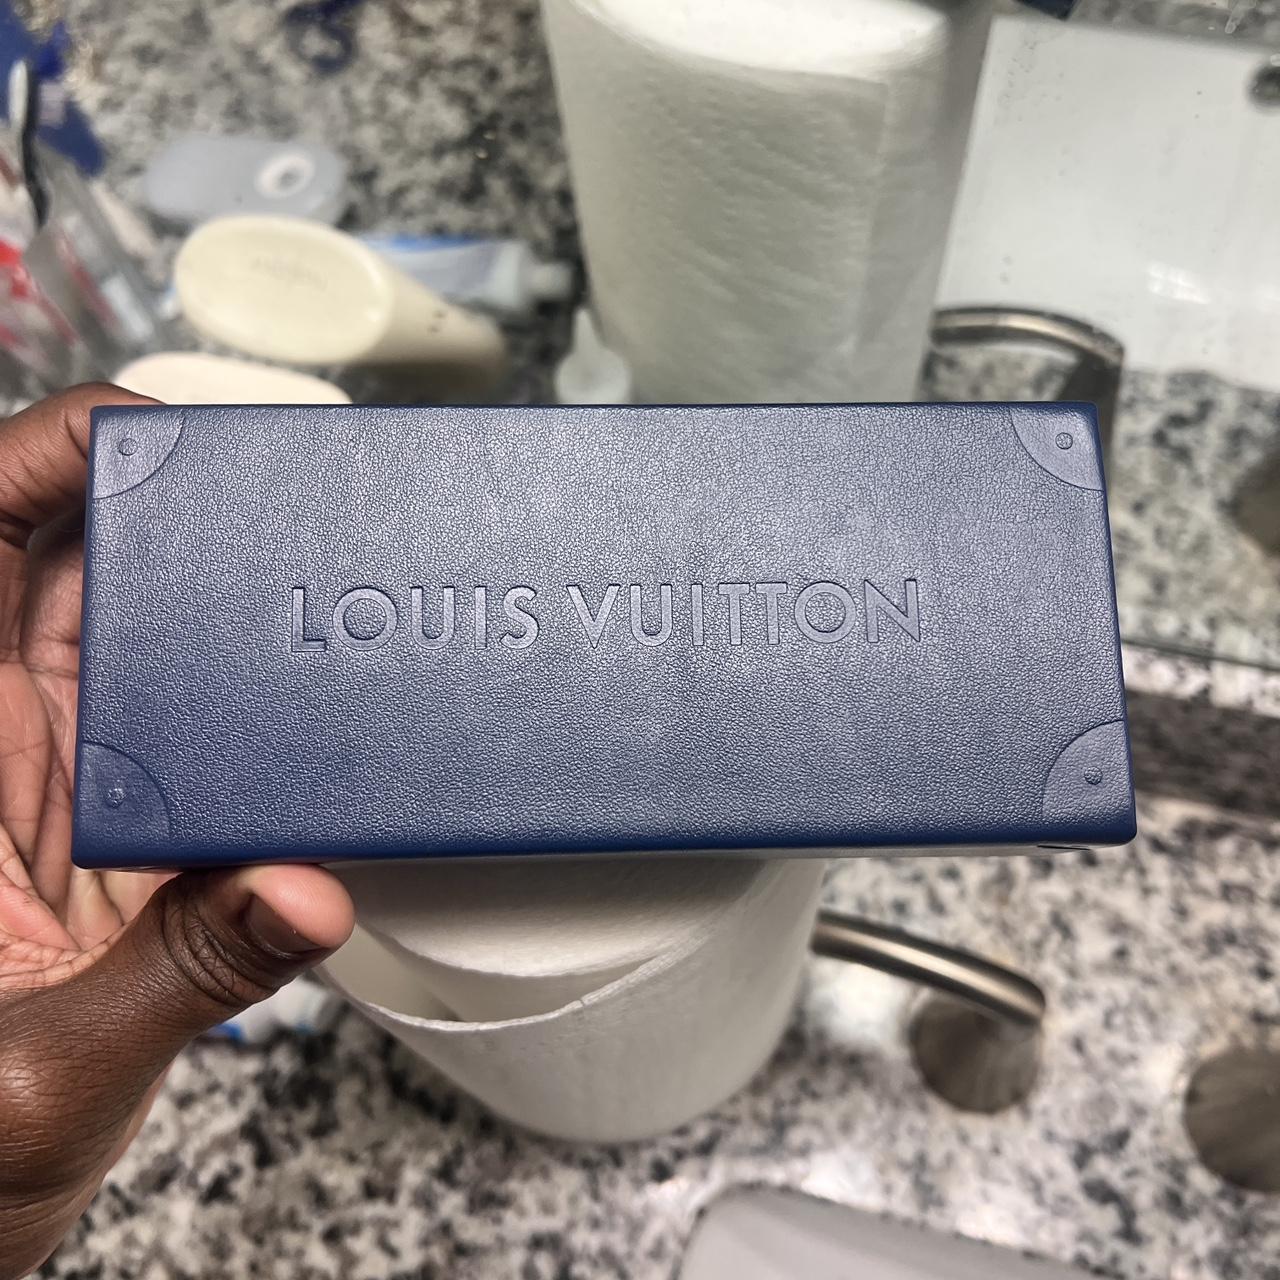 Louis Vuitton glasses